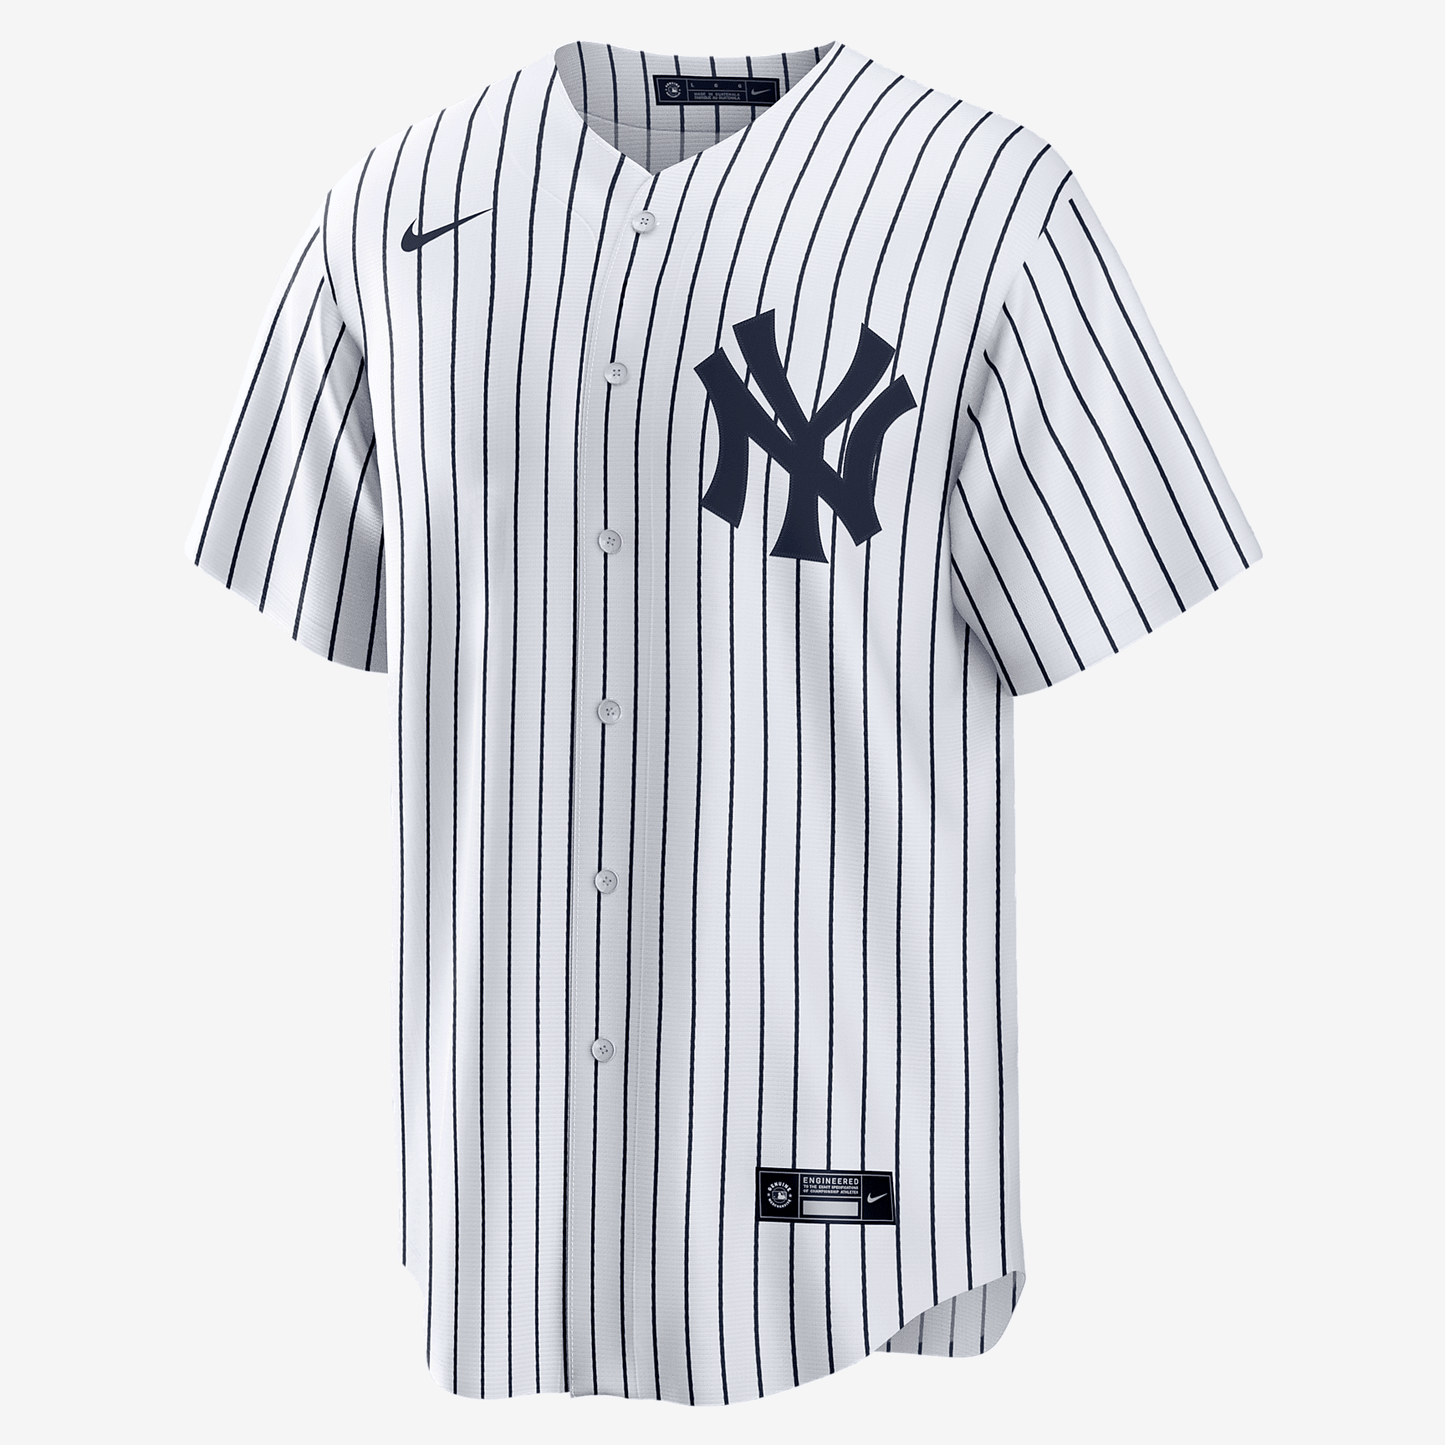 MLB New York Yankees (Derek Jeter) Men's Replica Baseball Jersey - White